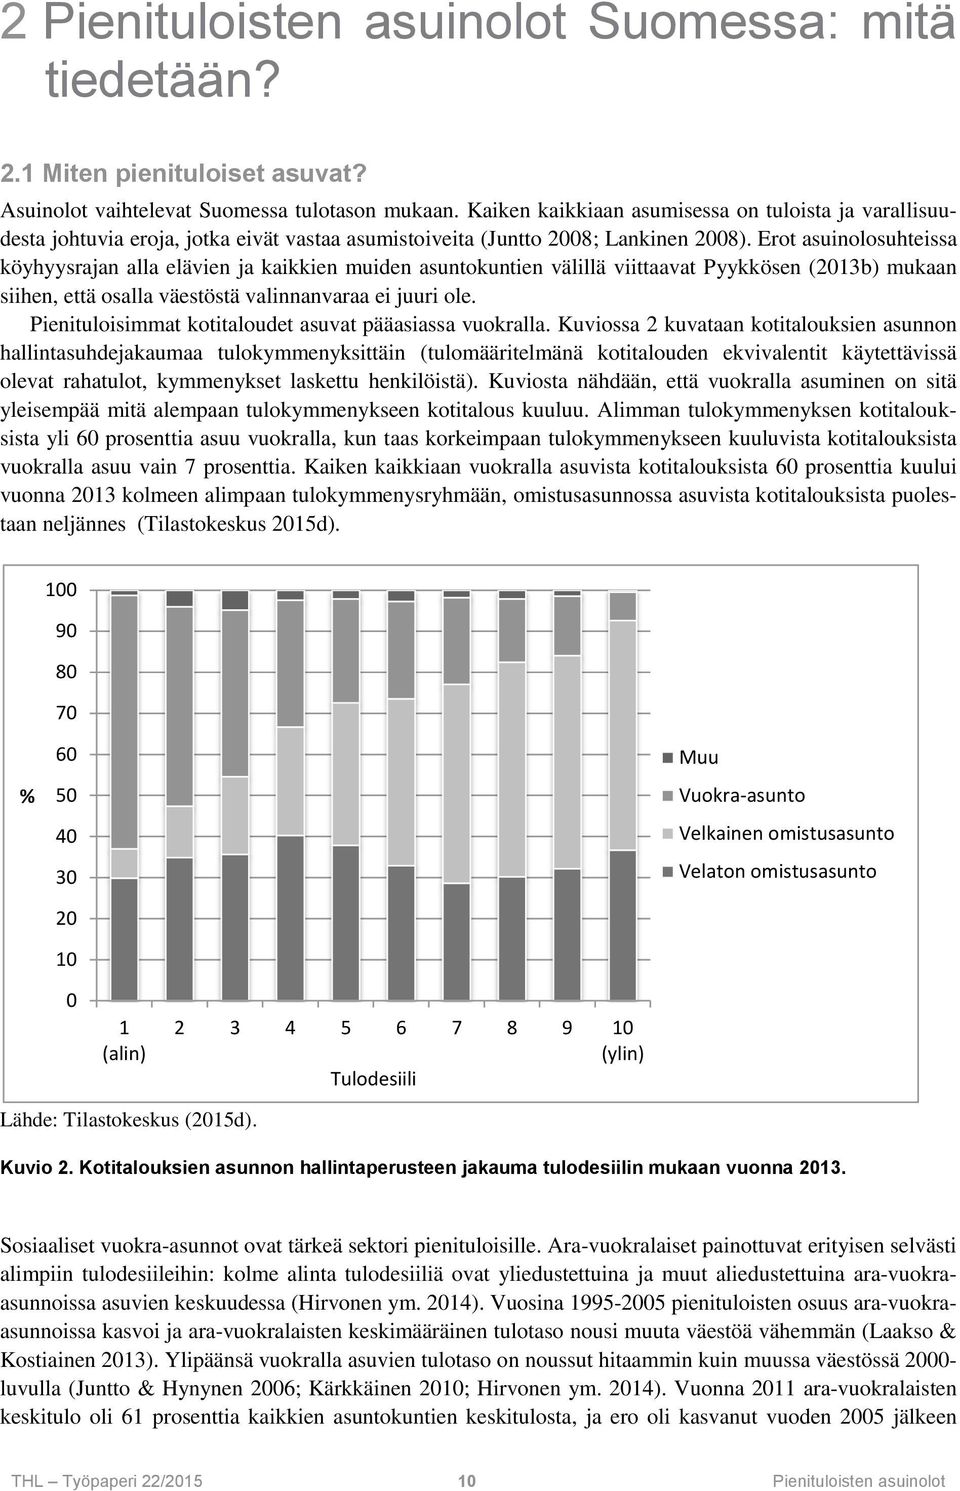 Erot asuinolosuhteissa köyhyysrajan alla elävien ja kaikkien muiden asuntokuntien välillä viittaavat Pyykkösen (2013b) mukaan siihen, että osalla väestöstä valinnanvaraa ei juuri ole.